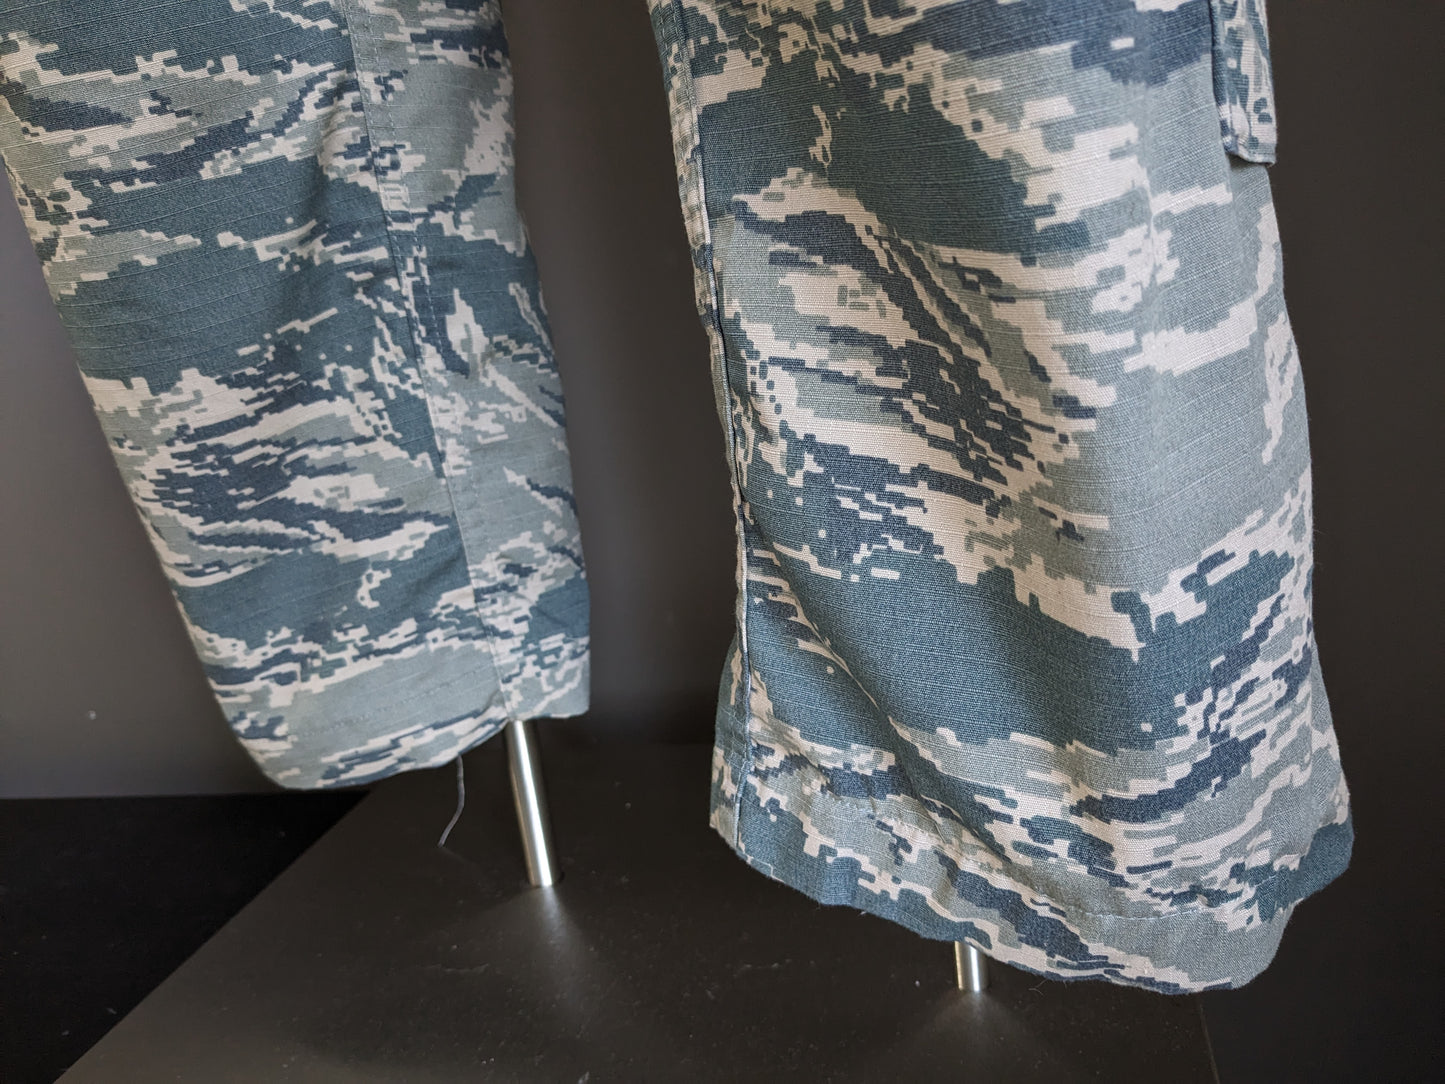 Army / Leger look Cargo broek. Groen Bruine print. Elastische taille. Maat M.